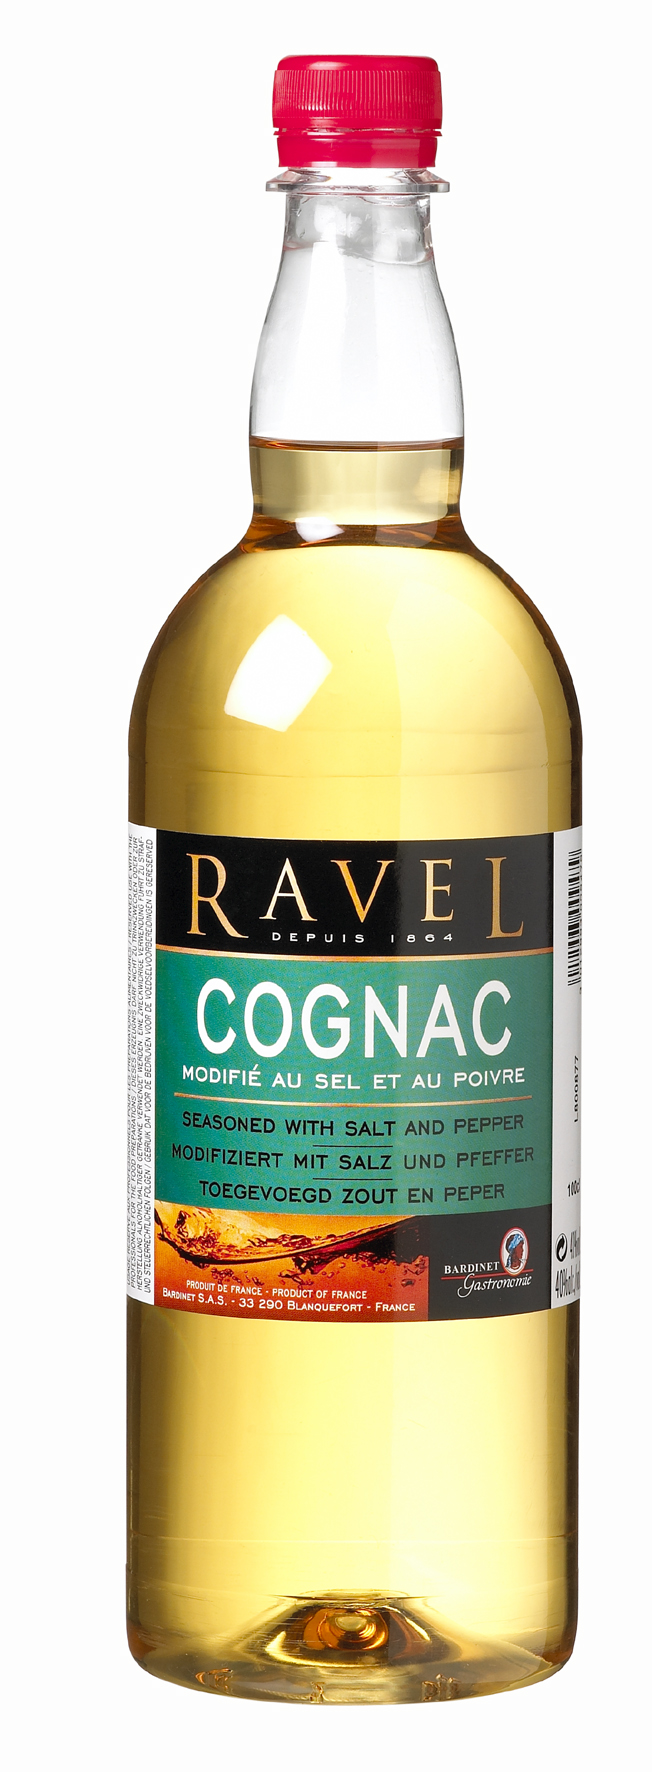 48709 Ravel cognac pet fles 1ltr